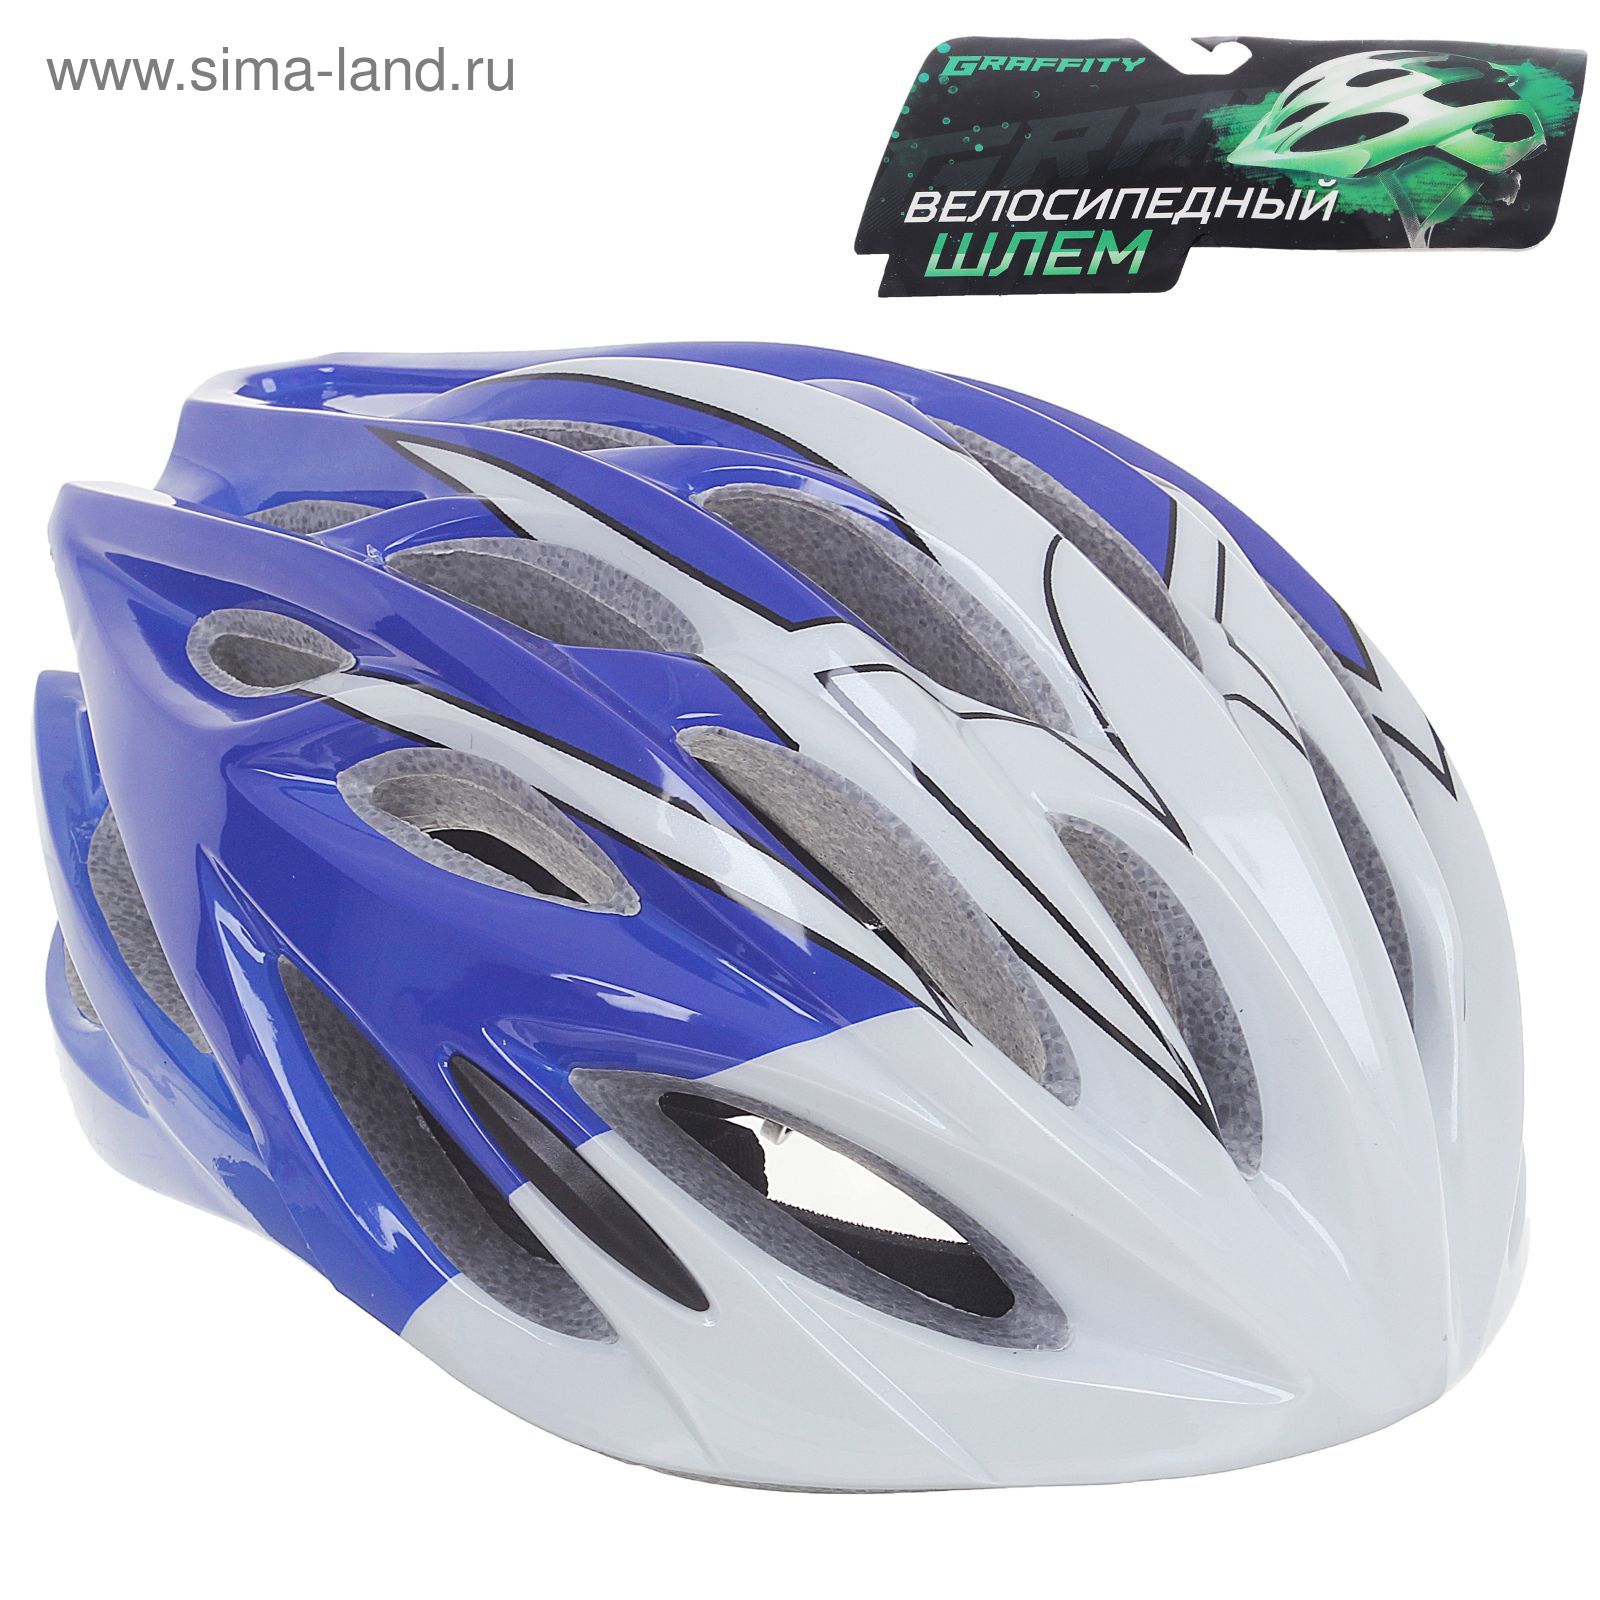 Шлем велосипедиста взрослый ОТ-328, бело-синий, диаметр 54 см